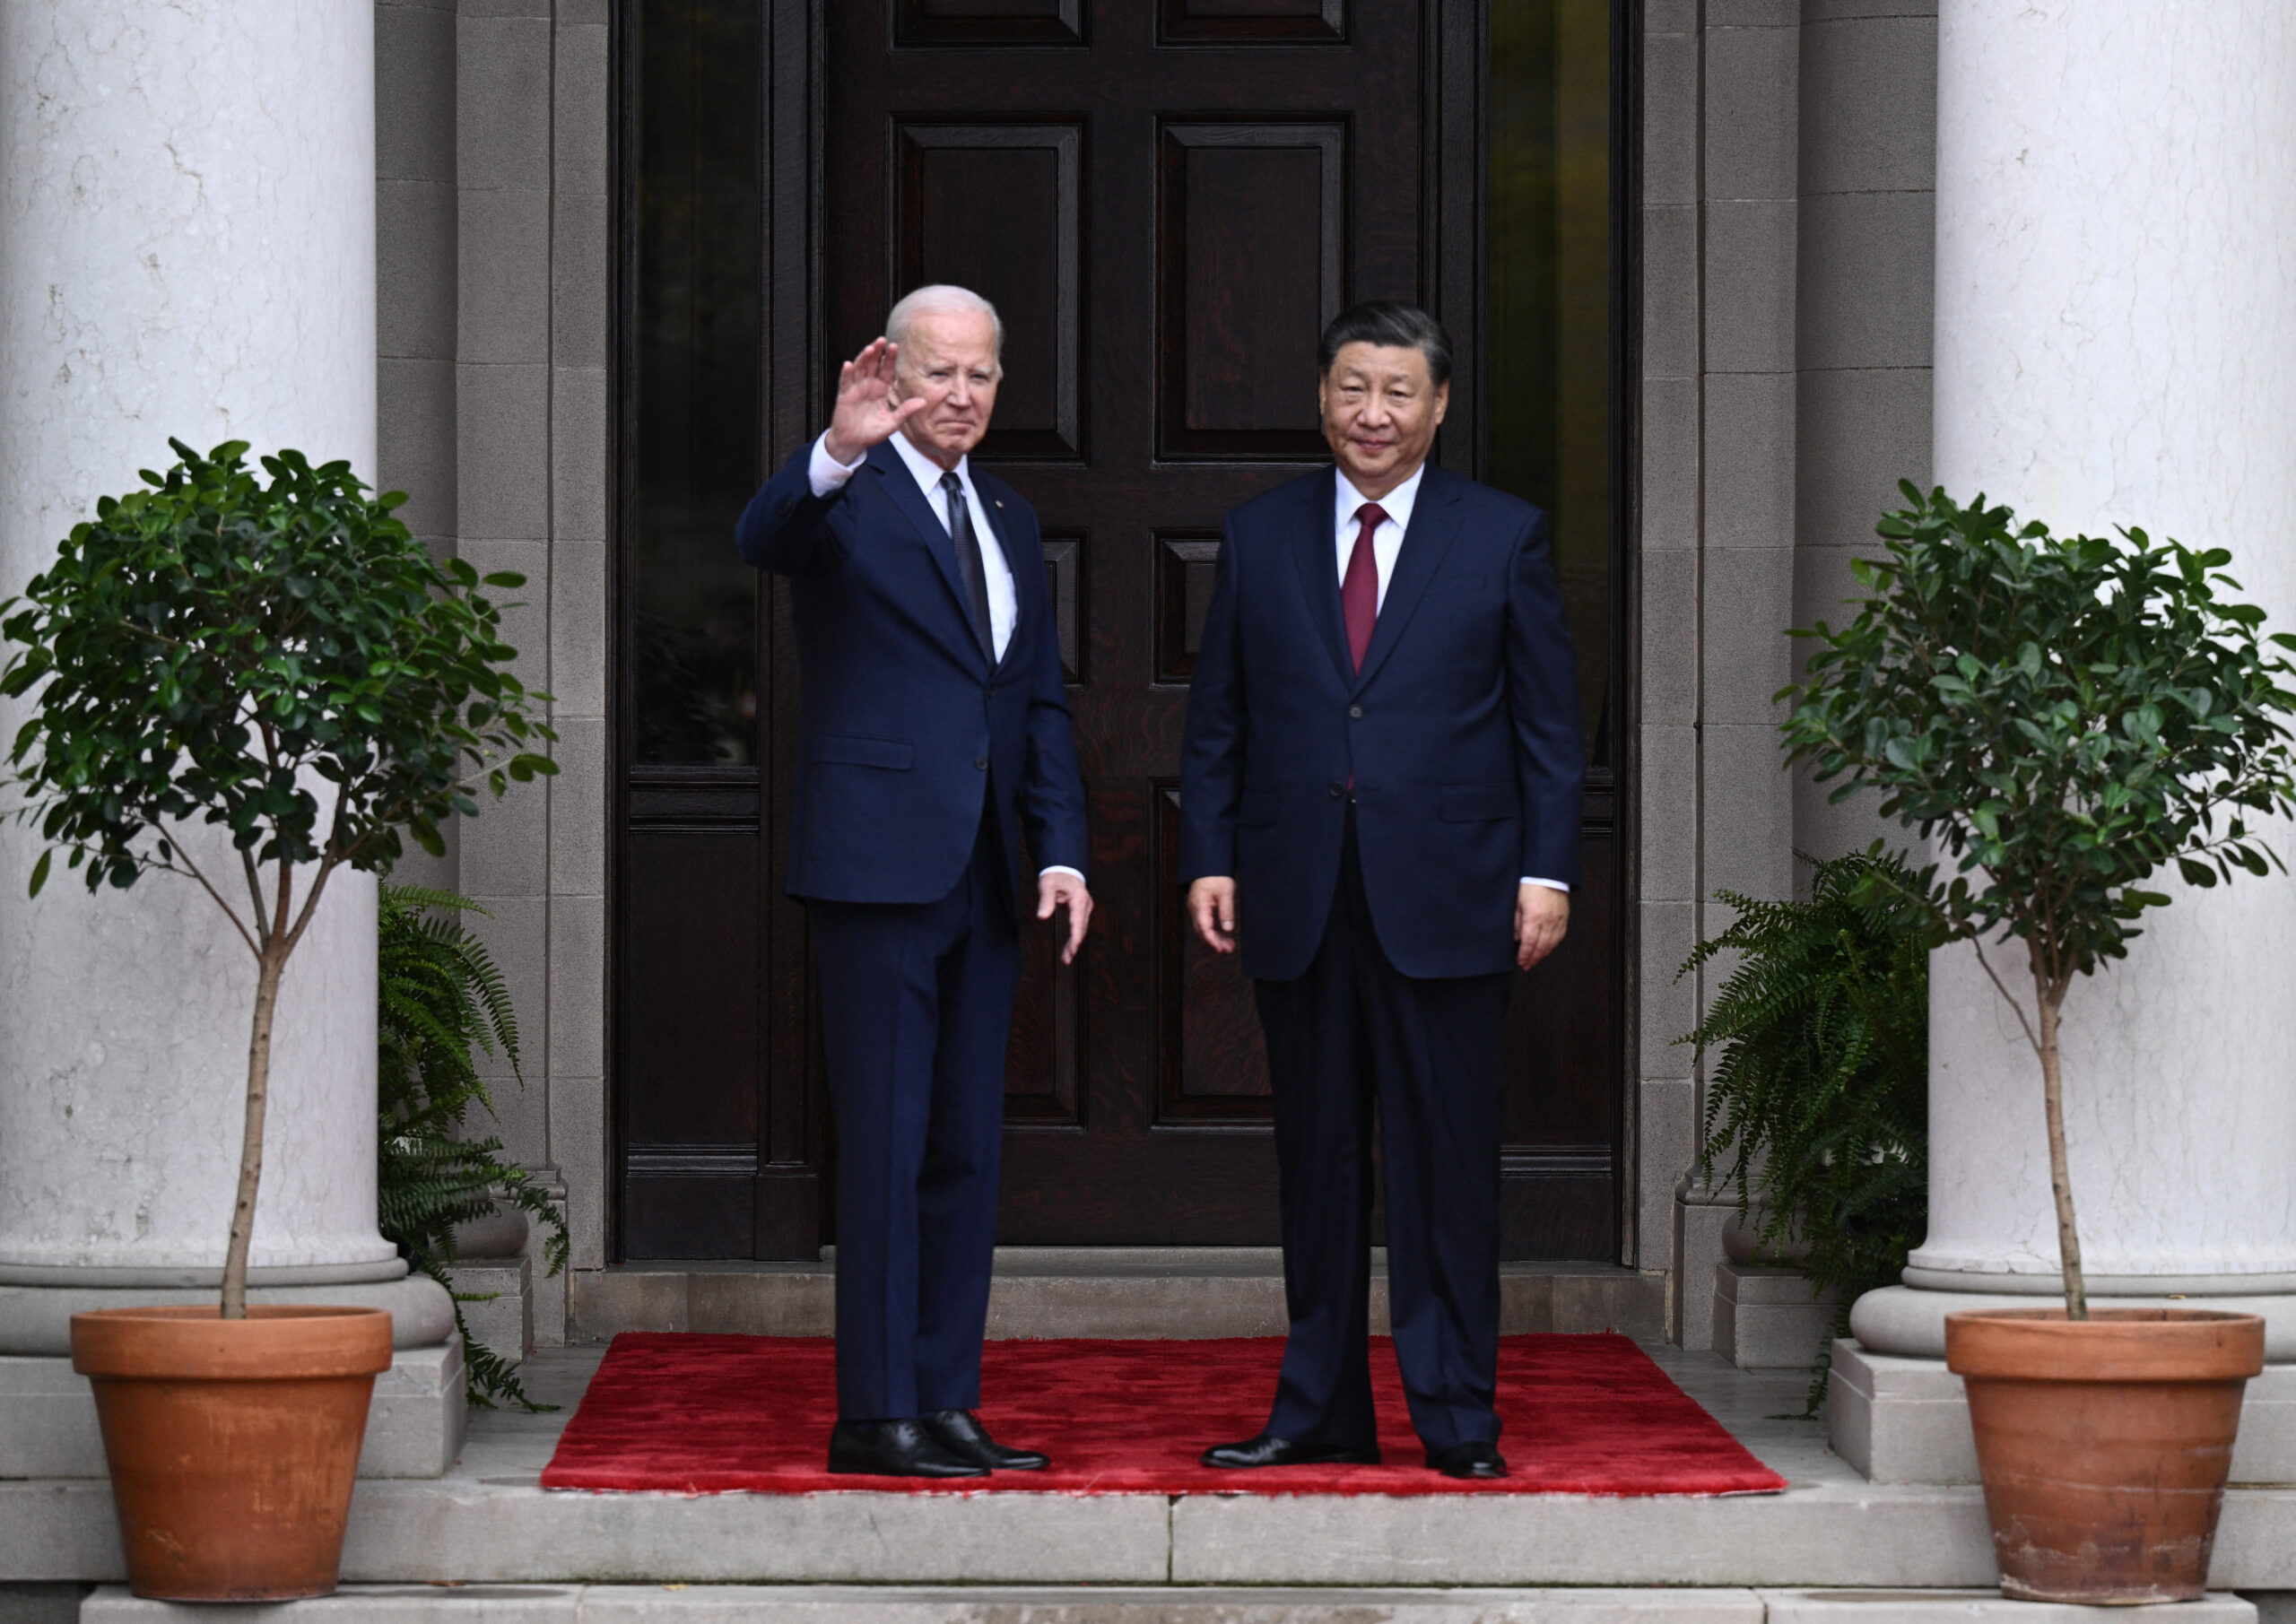 Σε αναθέρμανση του διαλόγου μεταξύ Ουάσινγκτον και Πεκίνου συμφώνησαν Μπάιντεν και Σι Τζιπίνγκ